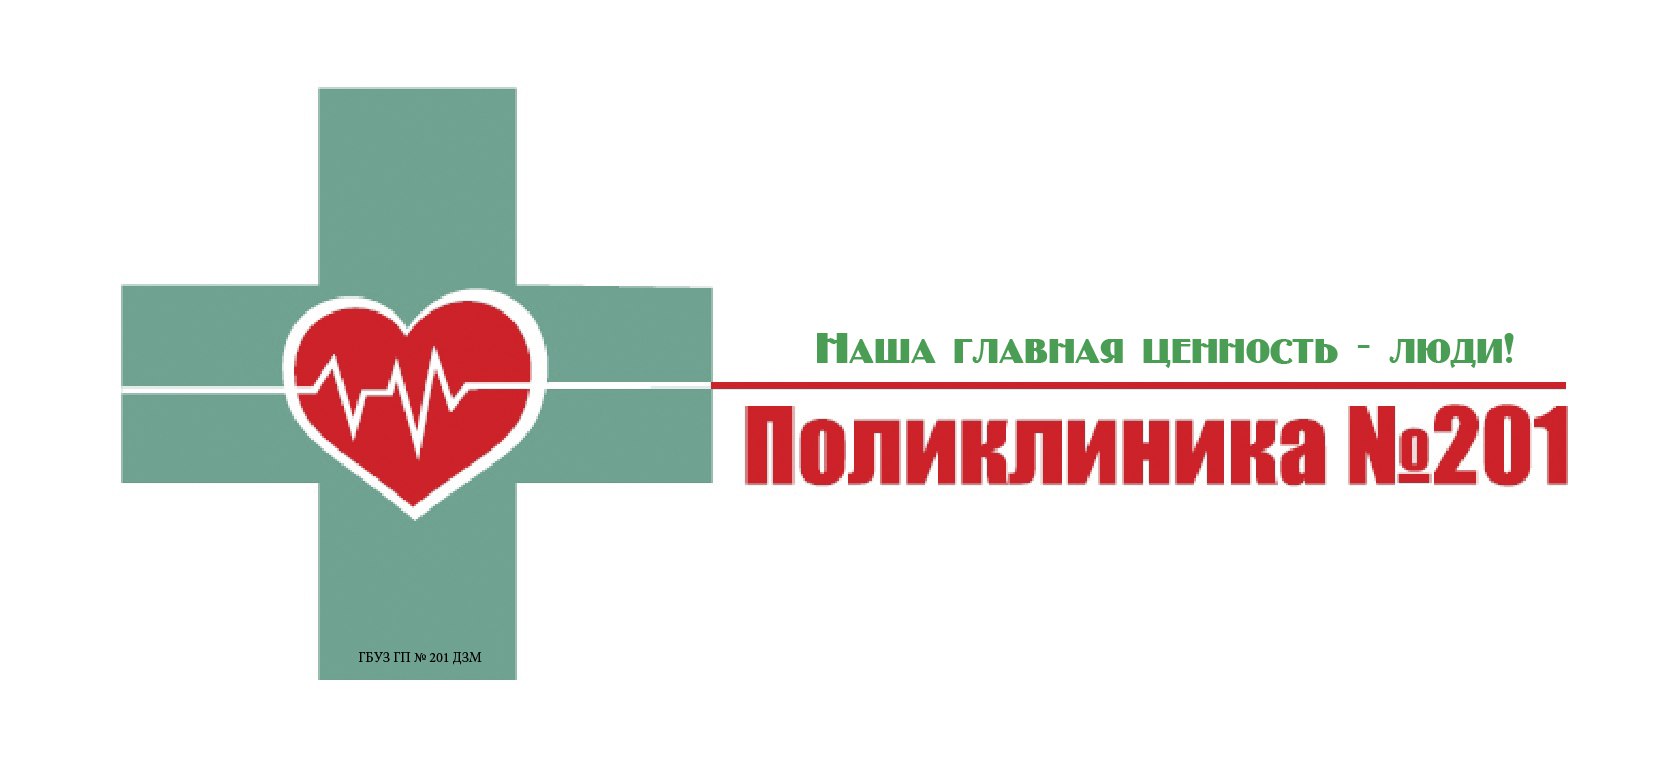 Красный крест поликлиника телефон. Поликлиника. Логотип больницы. Надпись поликлиника. Эмблема медицины поликлиника.